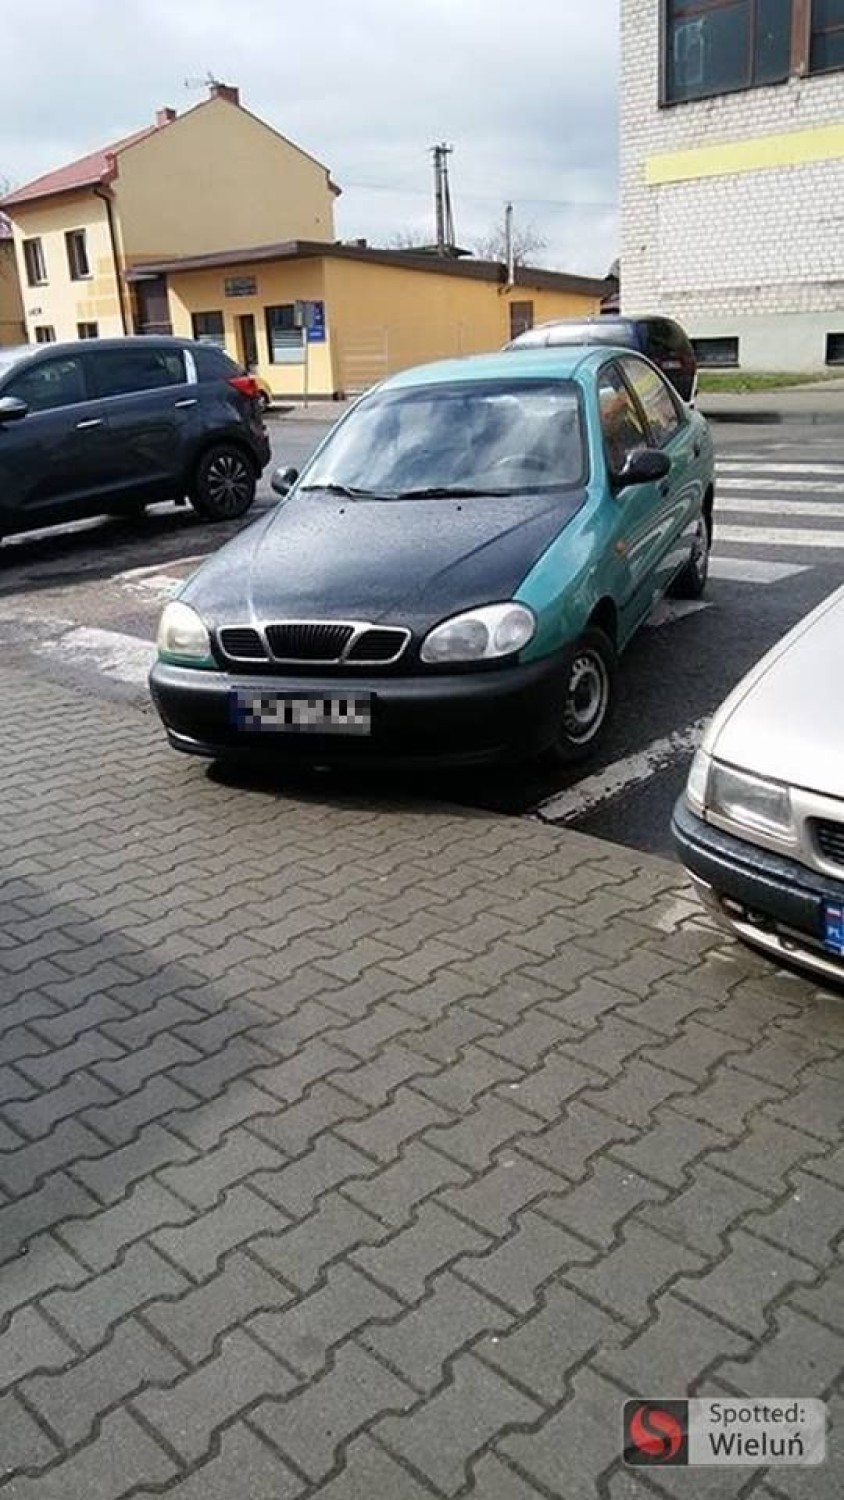 Mistrzowie parkowania w Wieluniu. Lepiej nie bierzcie z nich przykładu ZDJĘCIA